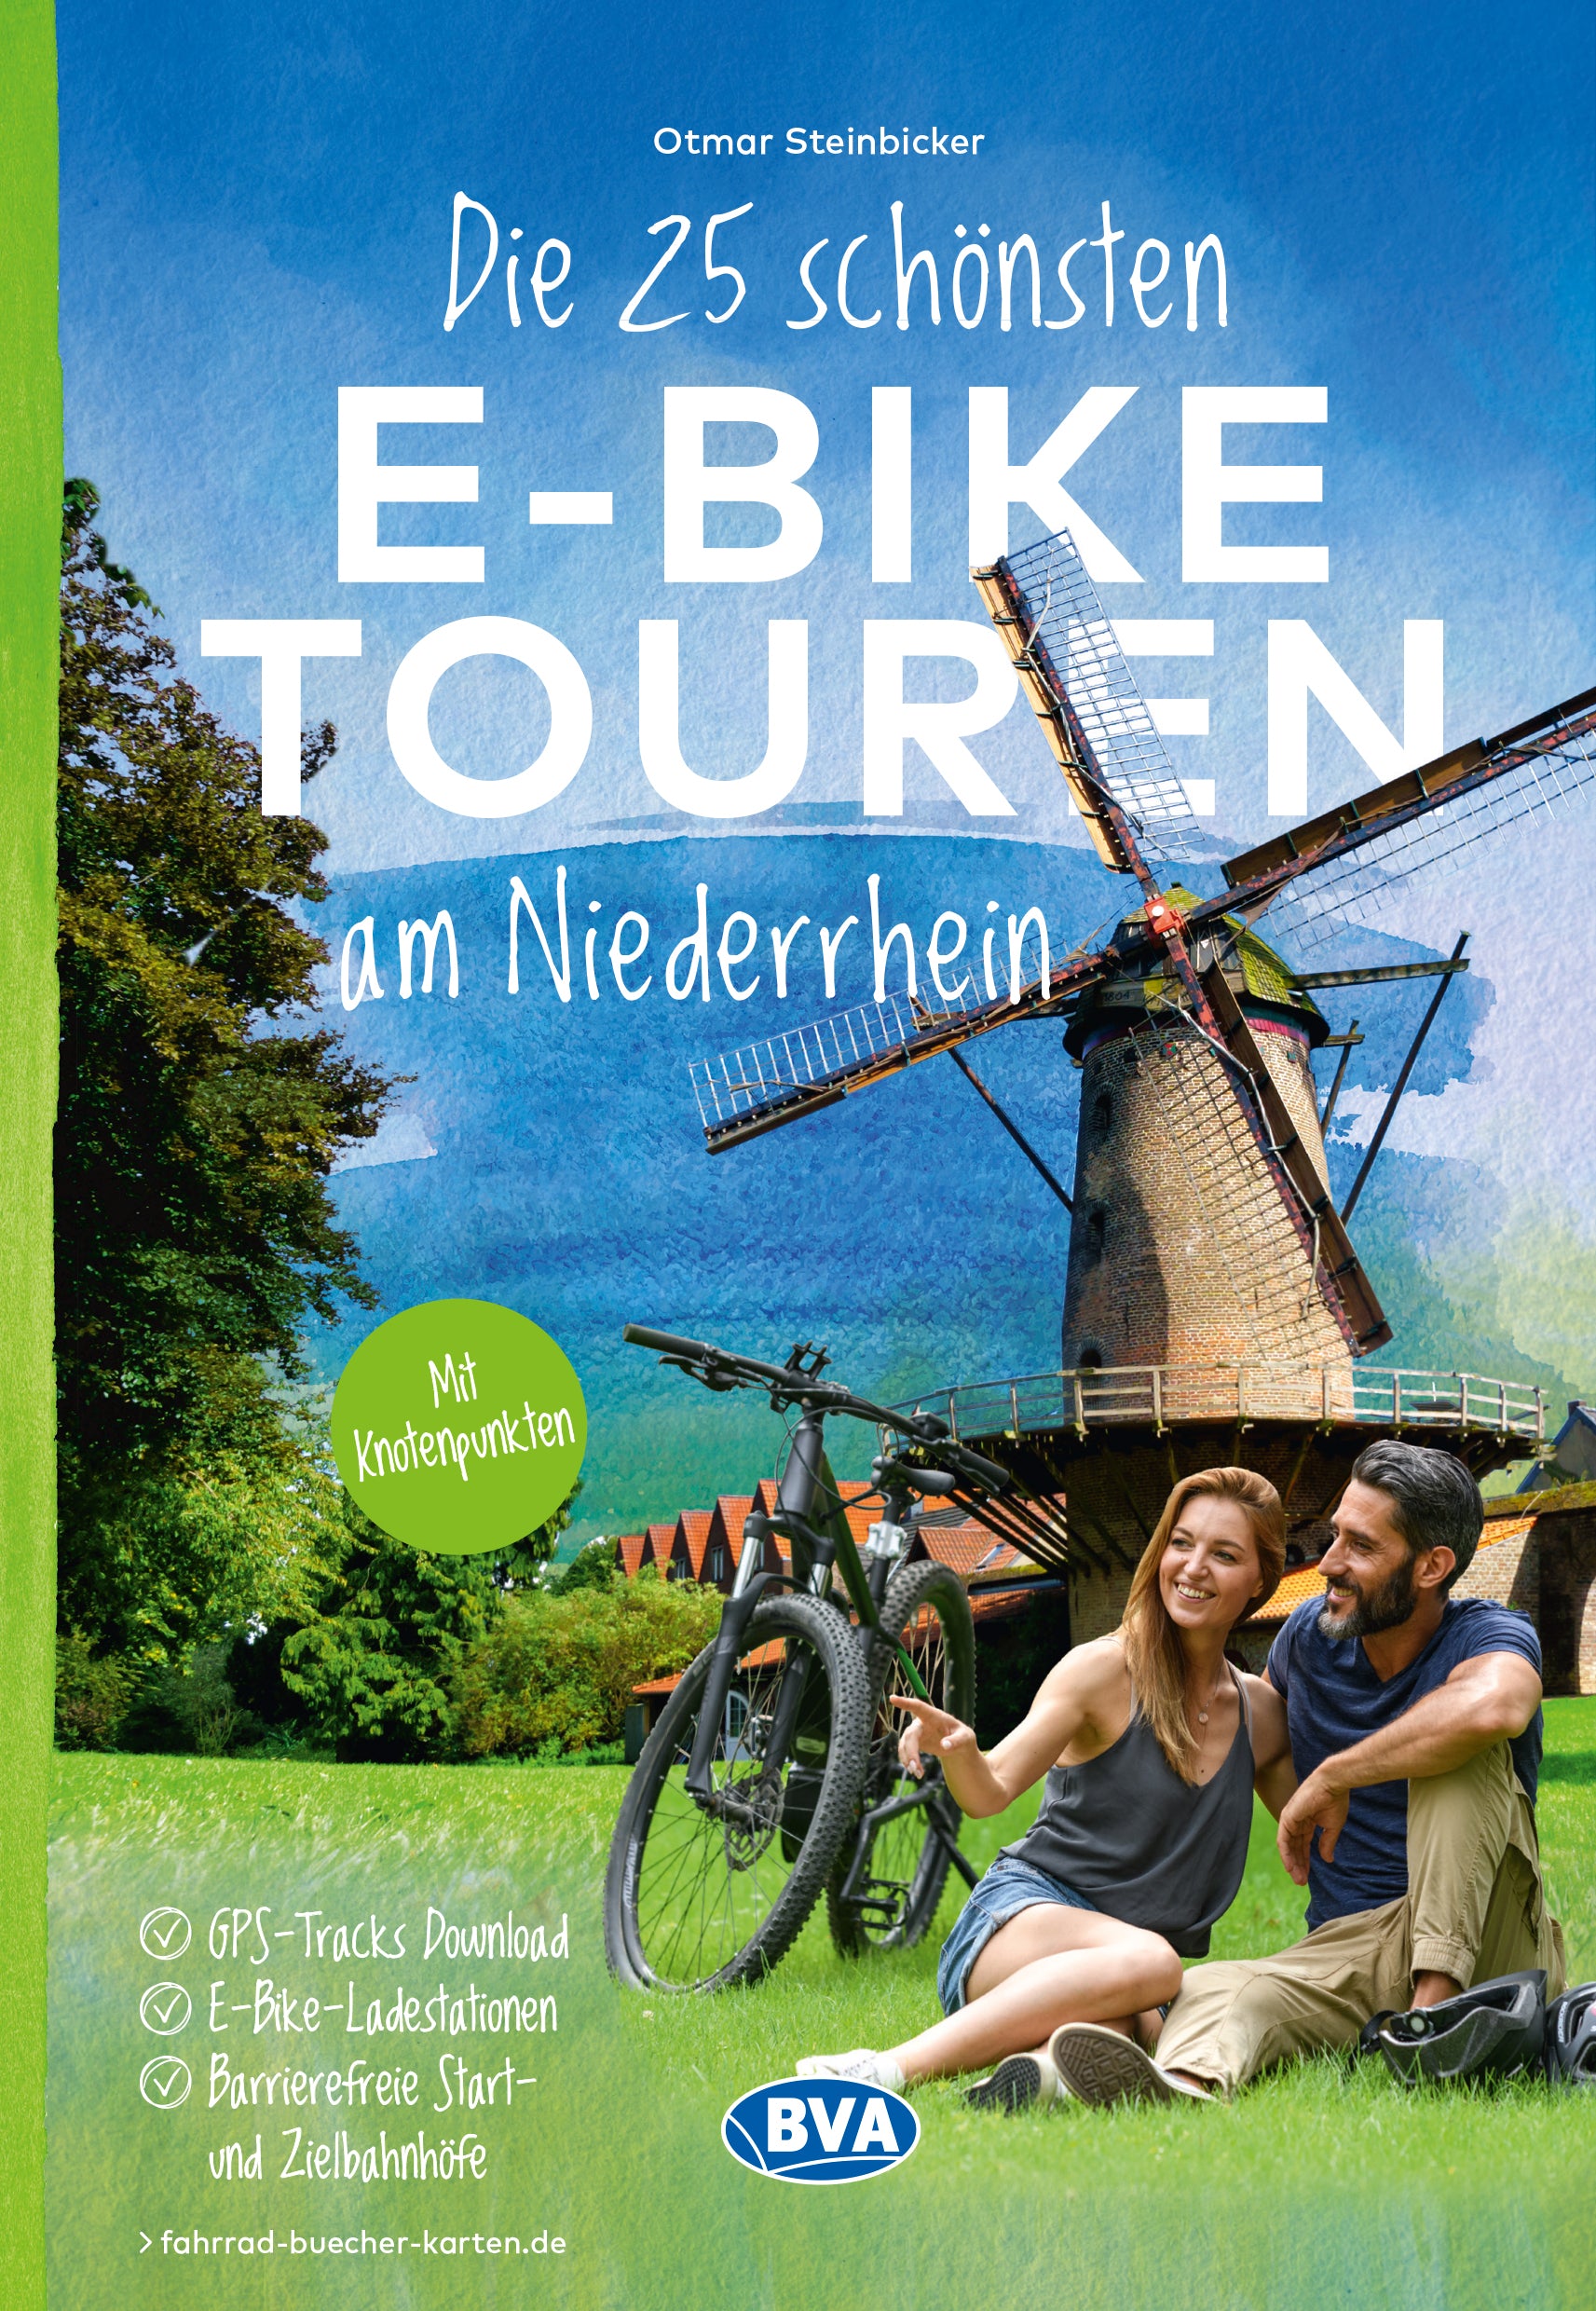 Die 25 schönsten E-Bike Touren am Niederrhein  - BVA Verlag